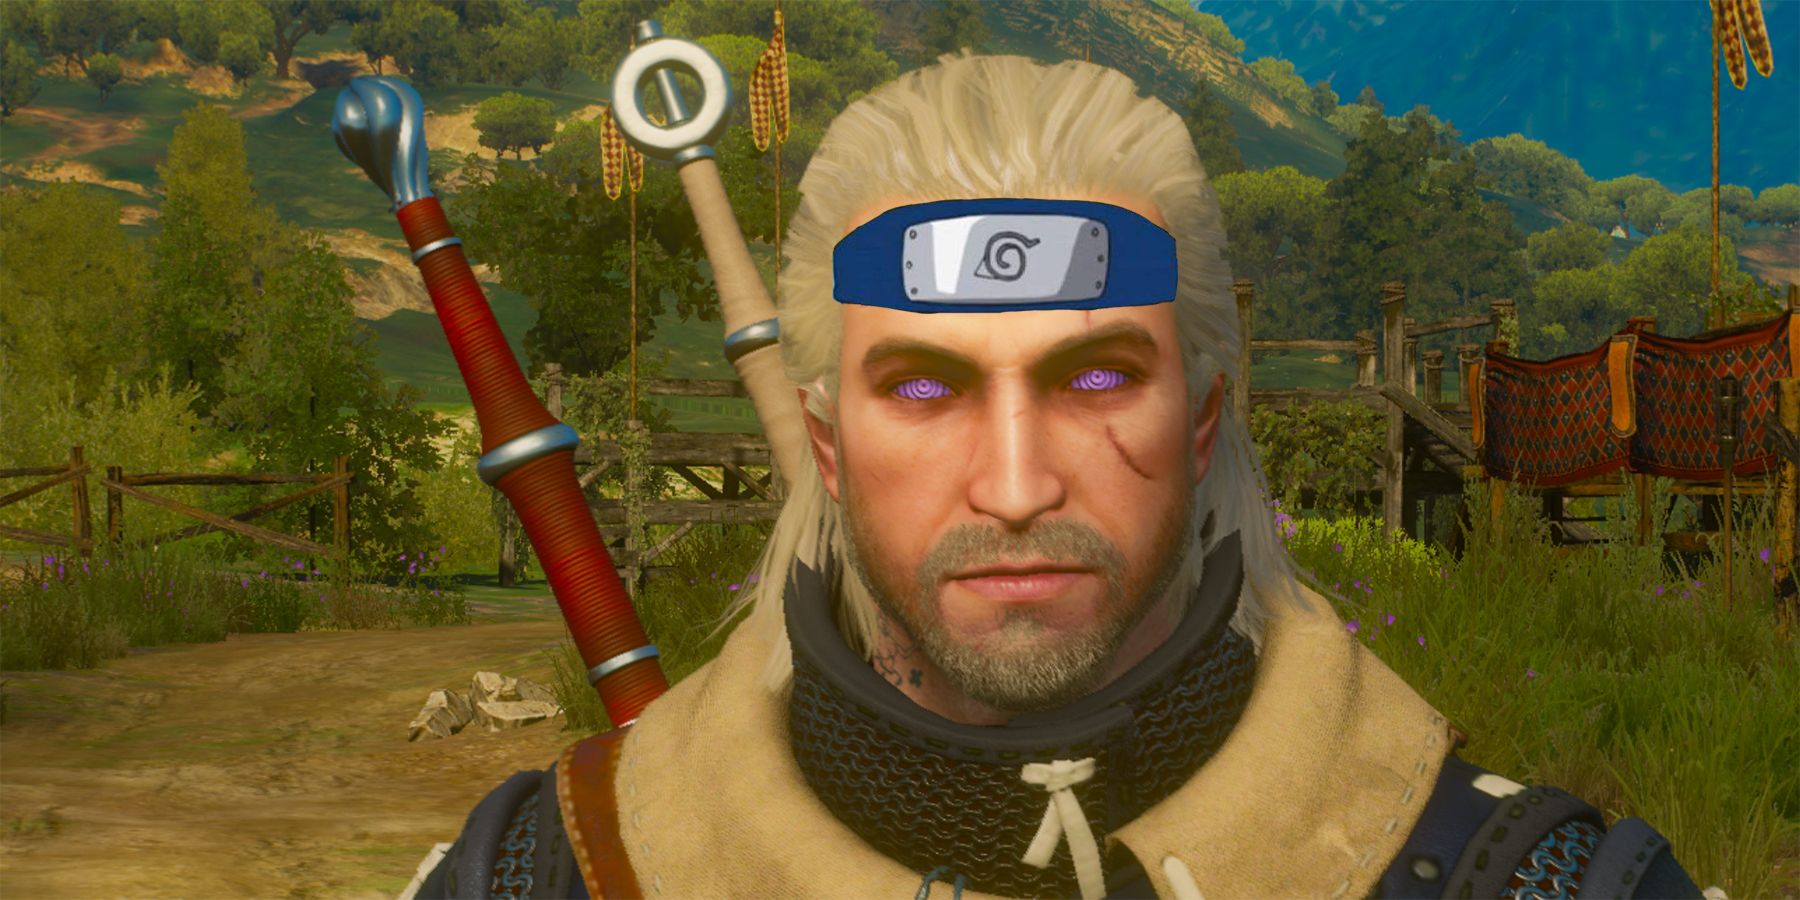 The Witcher 3 Mod le da a Geralt ojos inspirados en Naruto